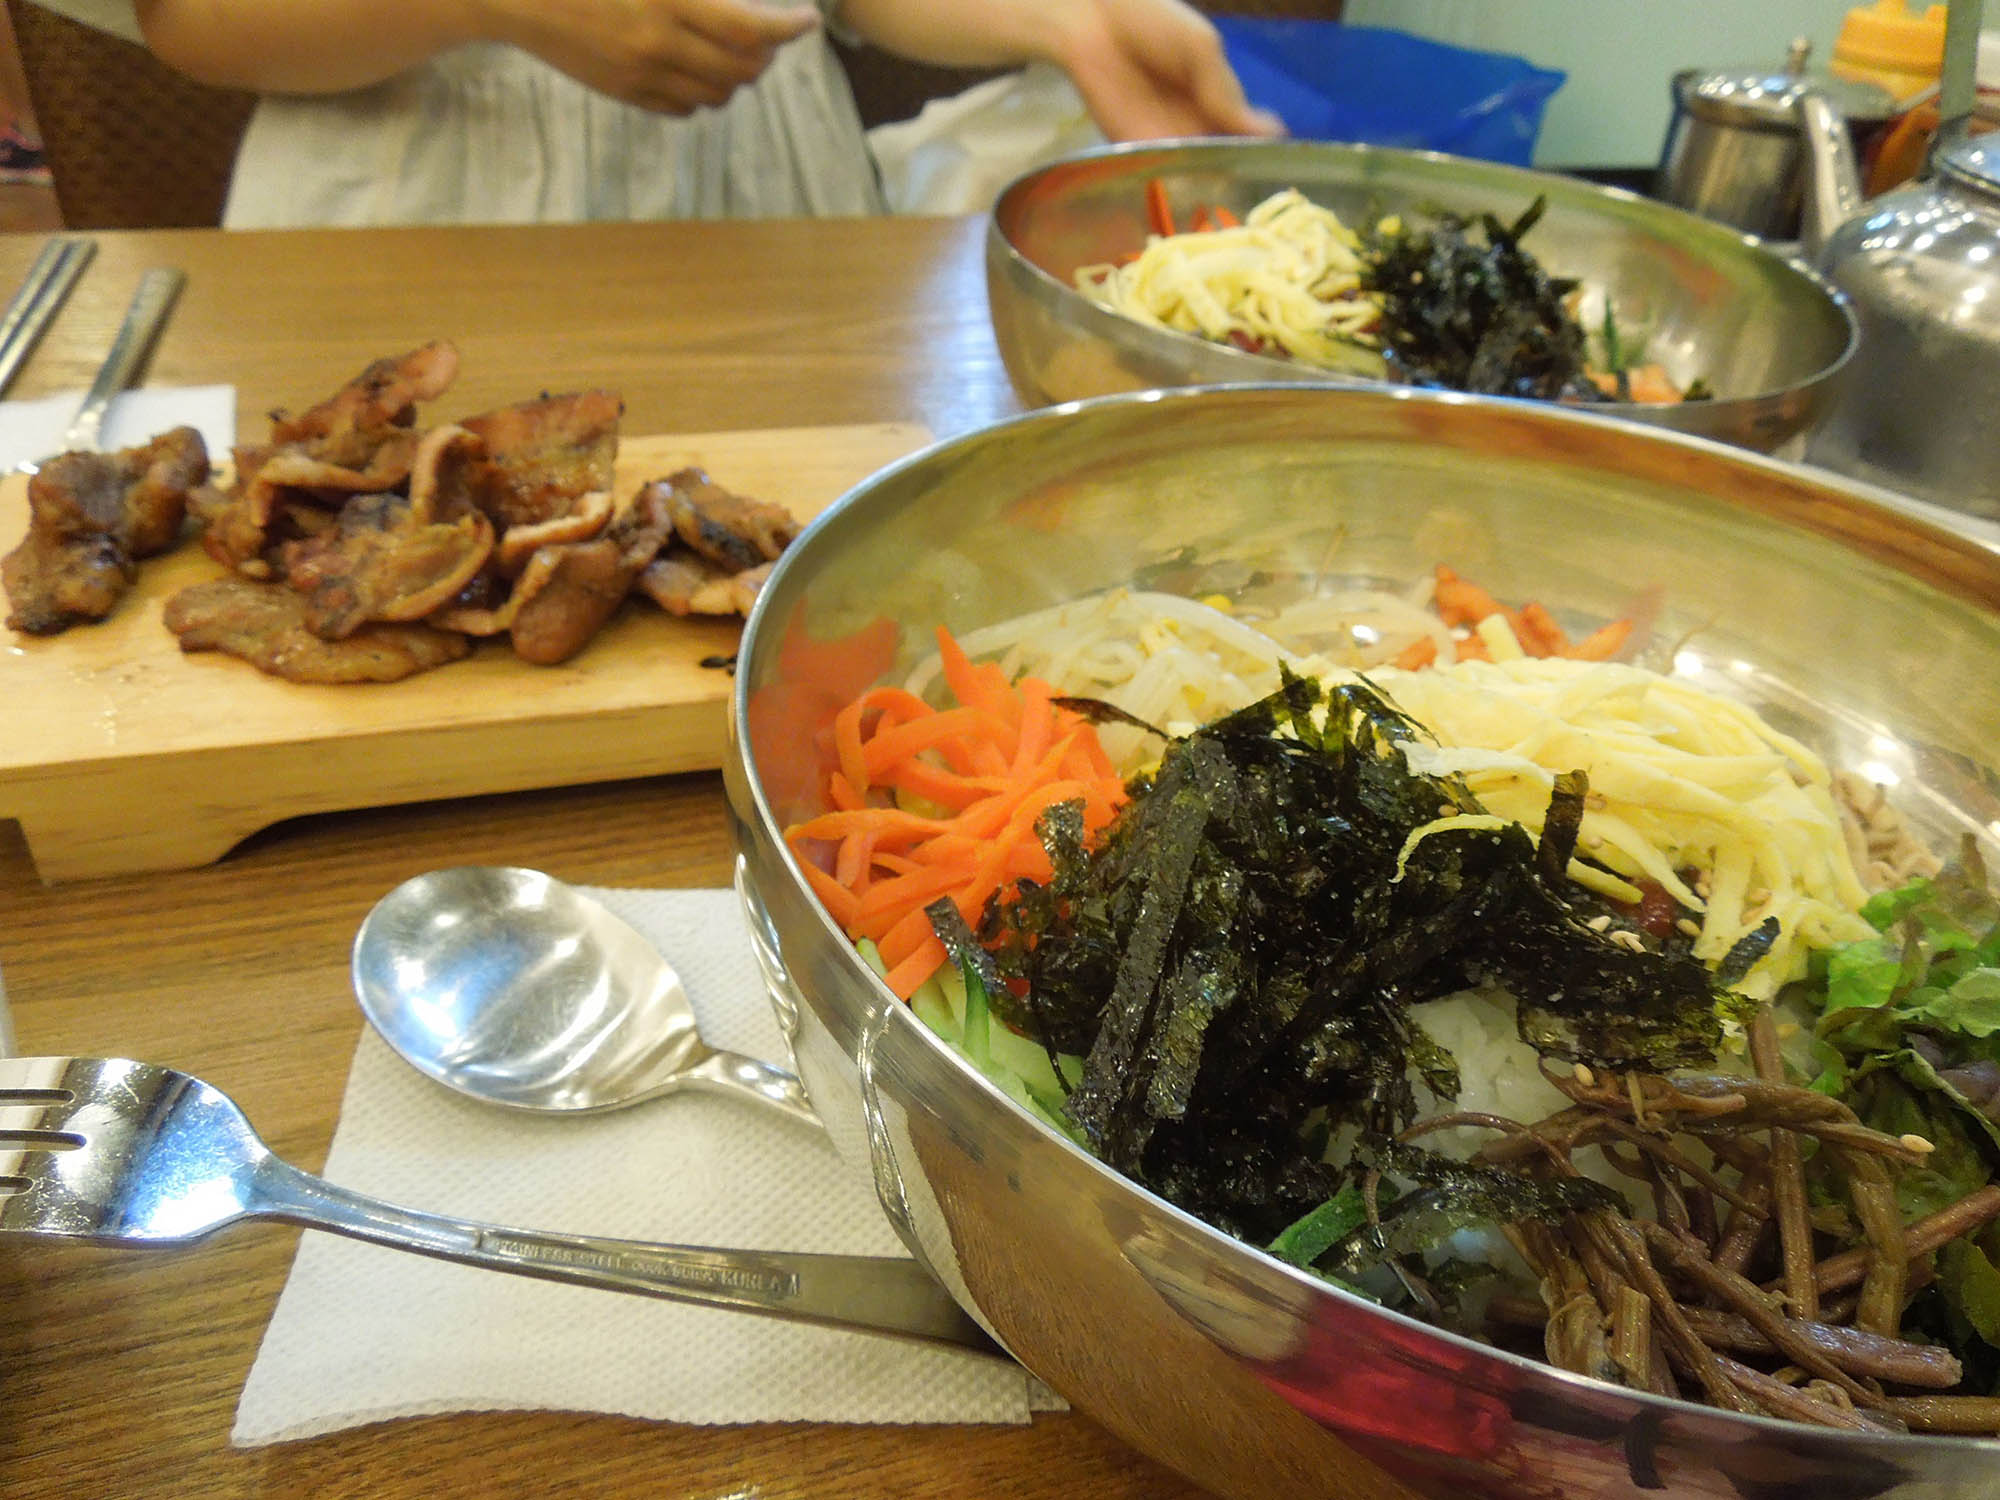 В глубокой тарелке рис с мясов и овощами — пибимпап, а на дощечке мясо, жаренное на гриле, — пулькоги